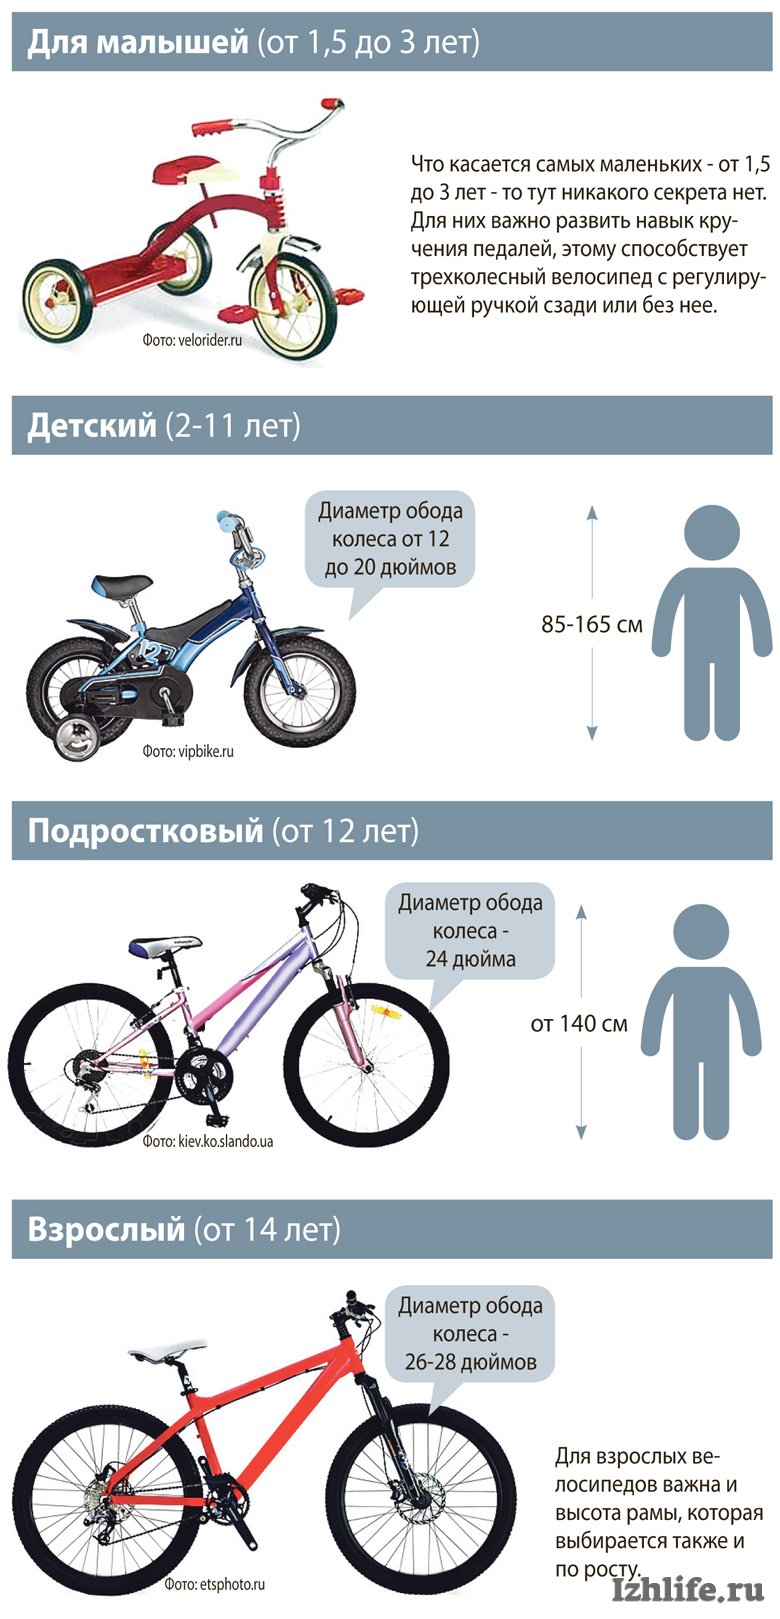 Как узнать раму велосипеда. Размер колес детского велосипеда по росту. Как выбрать велосипед для ребенка 4 года по росту и весу таблица. Таблица подбора велосипеда по росту ребенка рамы. Как выбрать раму для велосипеда по росту таблица.